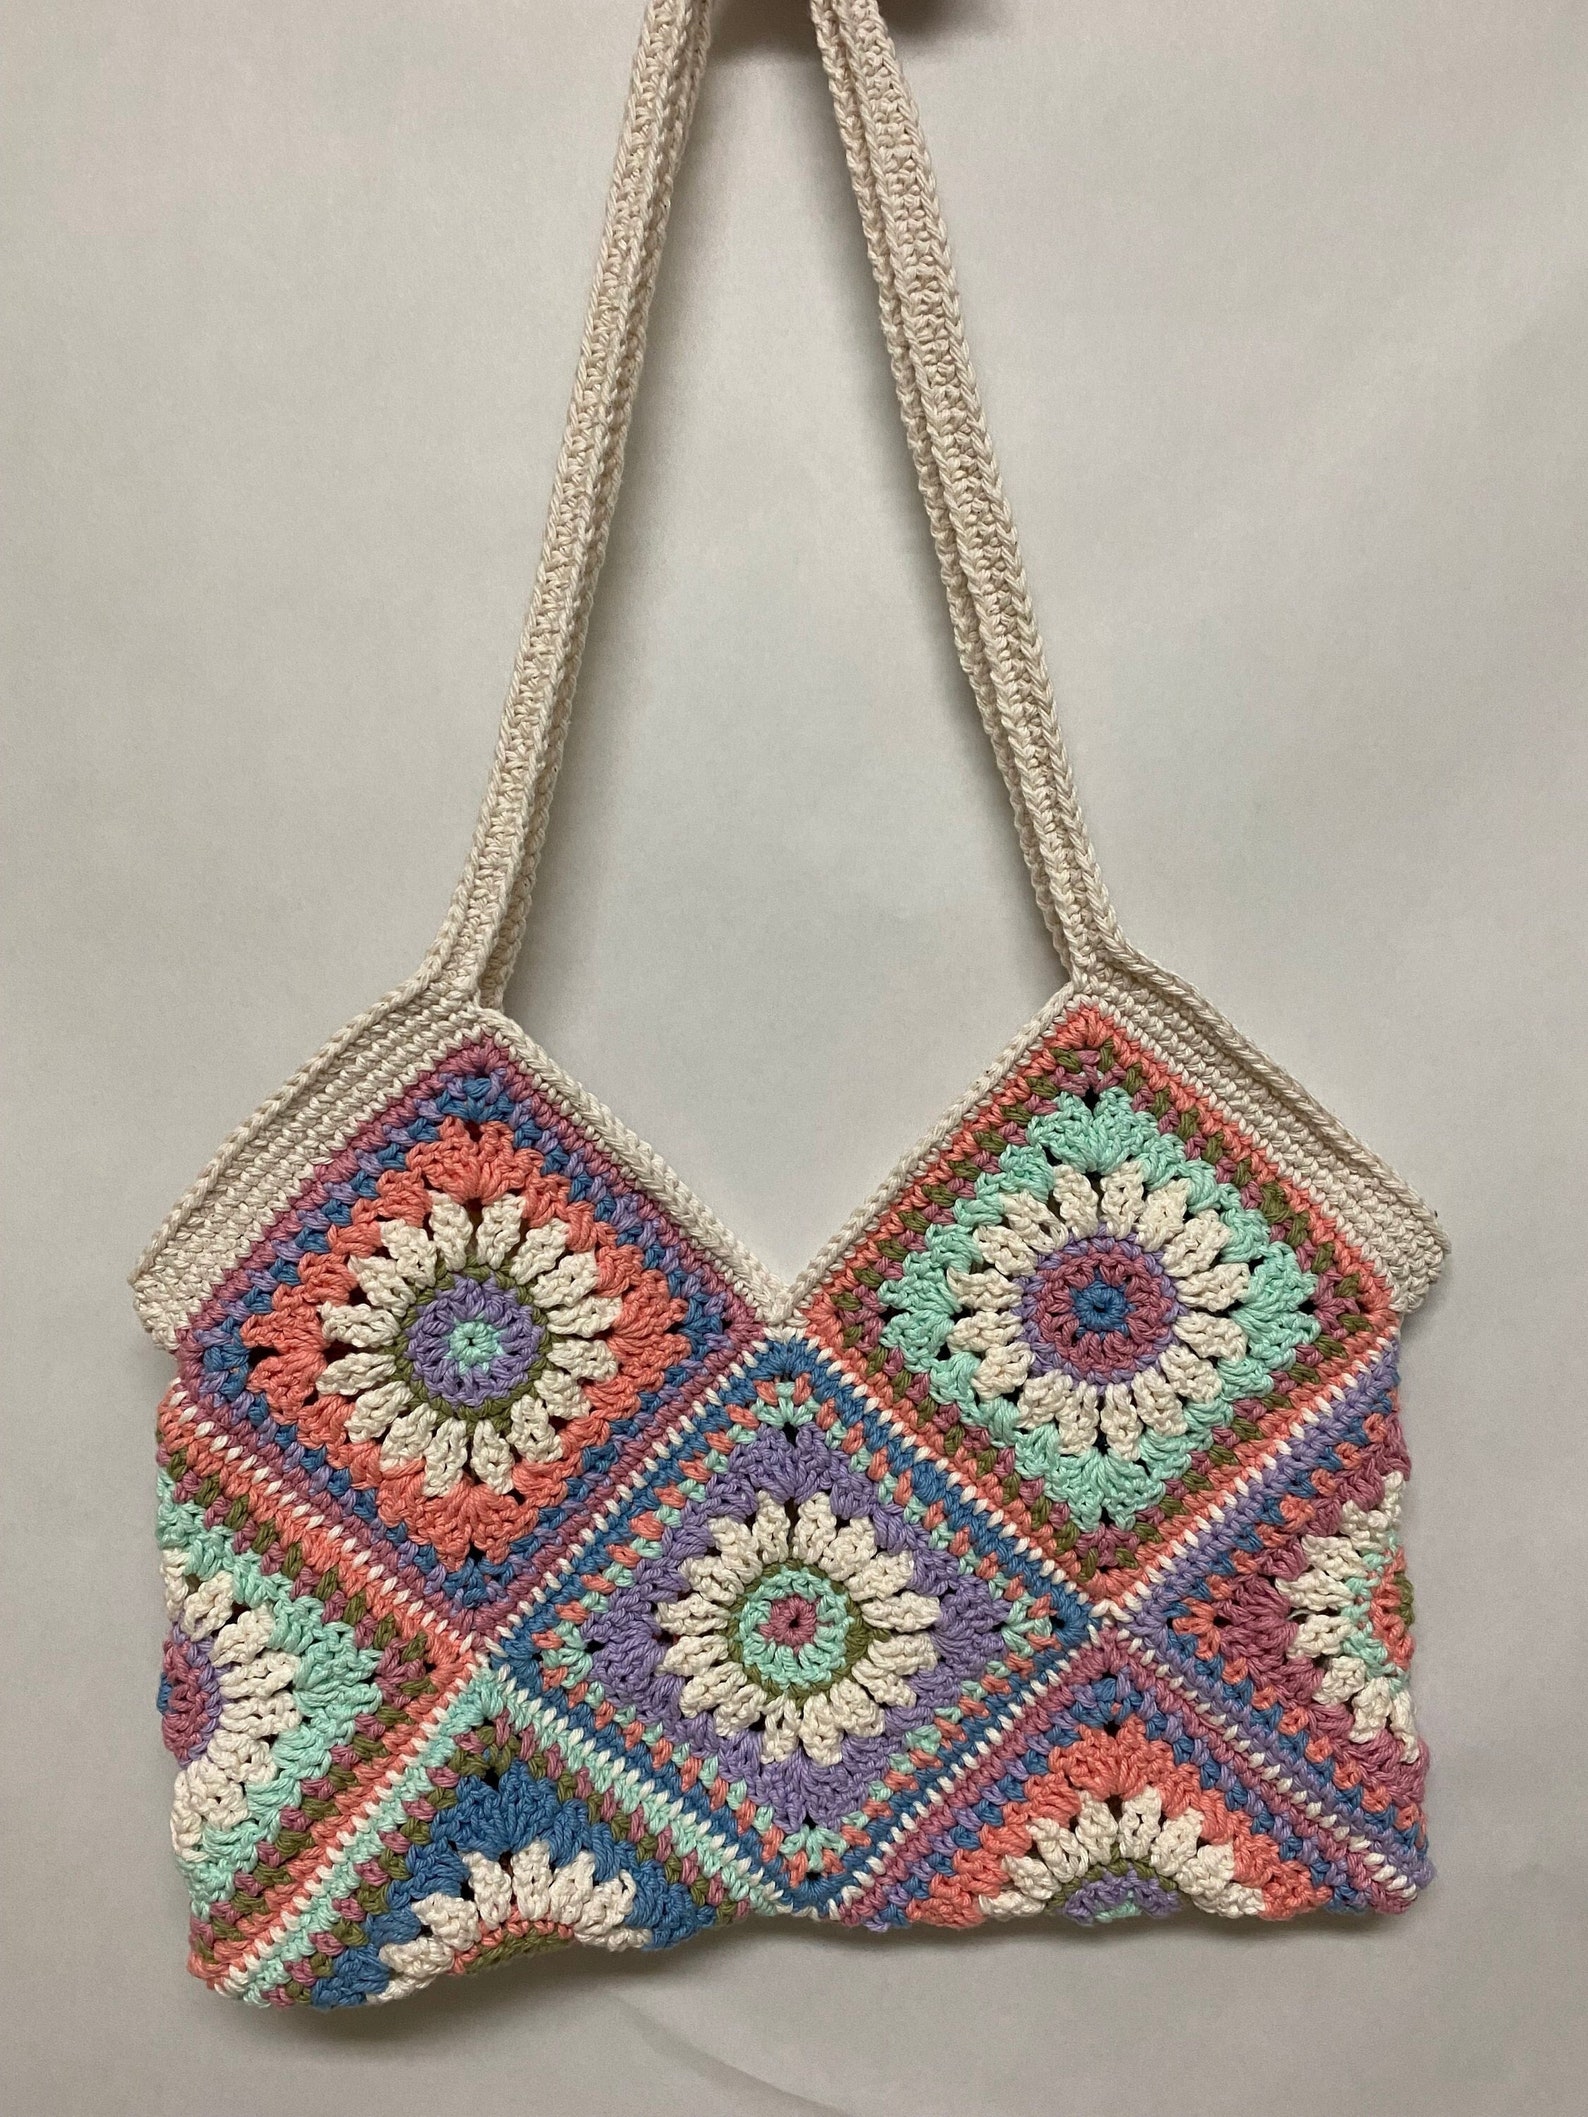 Flower Granny Square Crochet Bag Crochet Bag PATTERN - Etsy